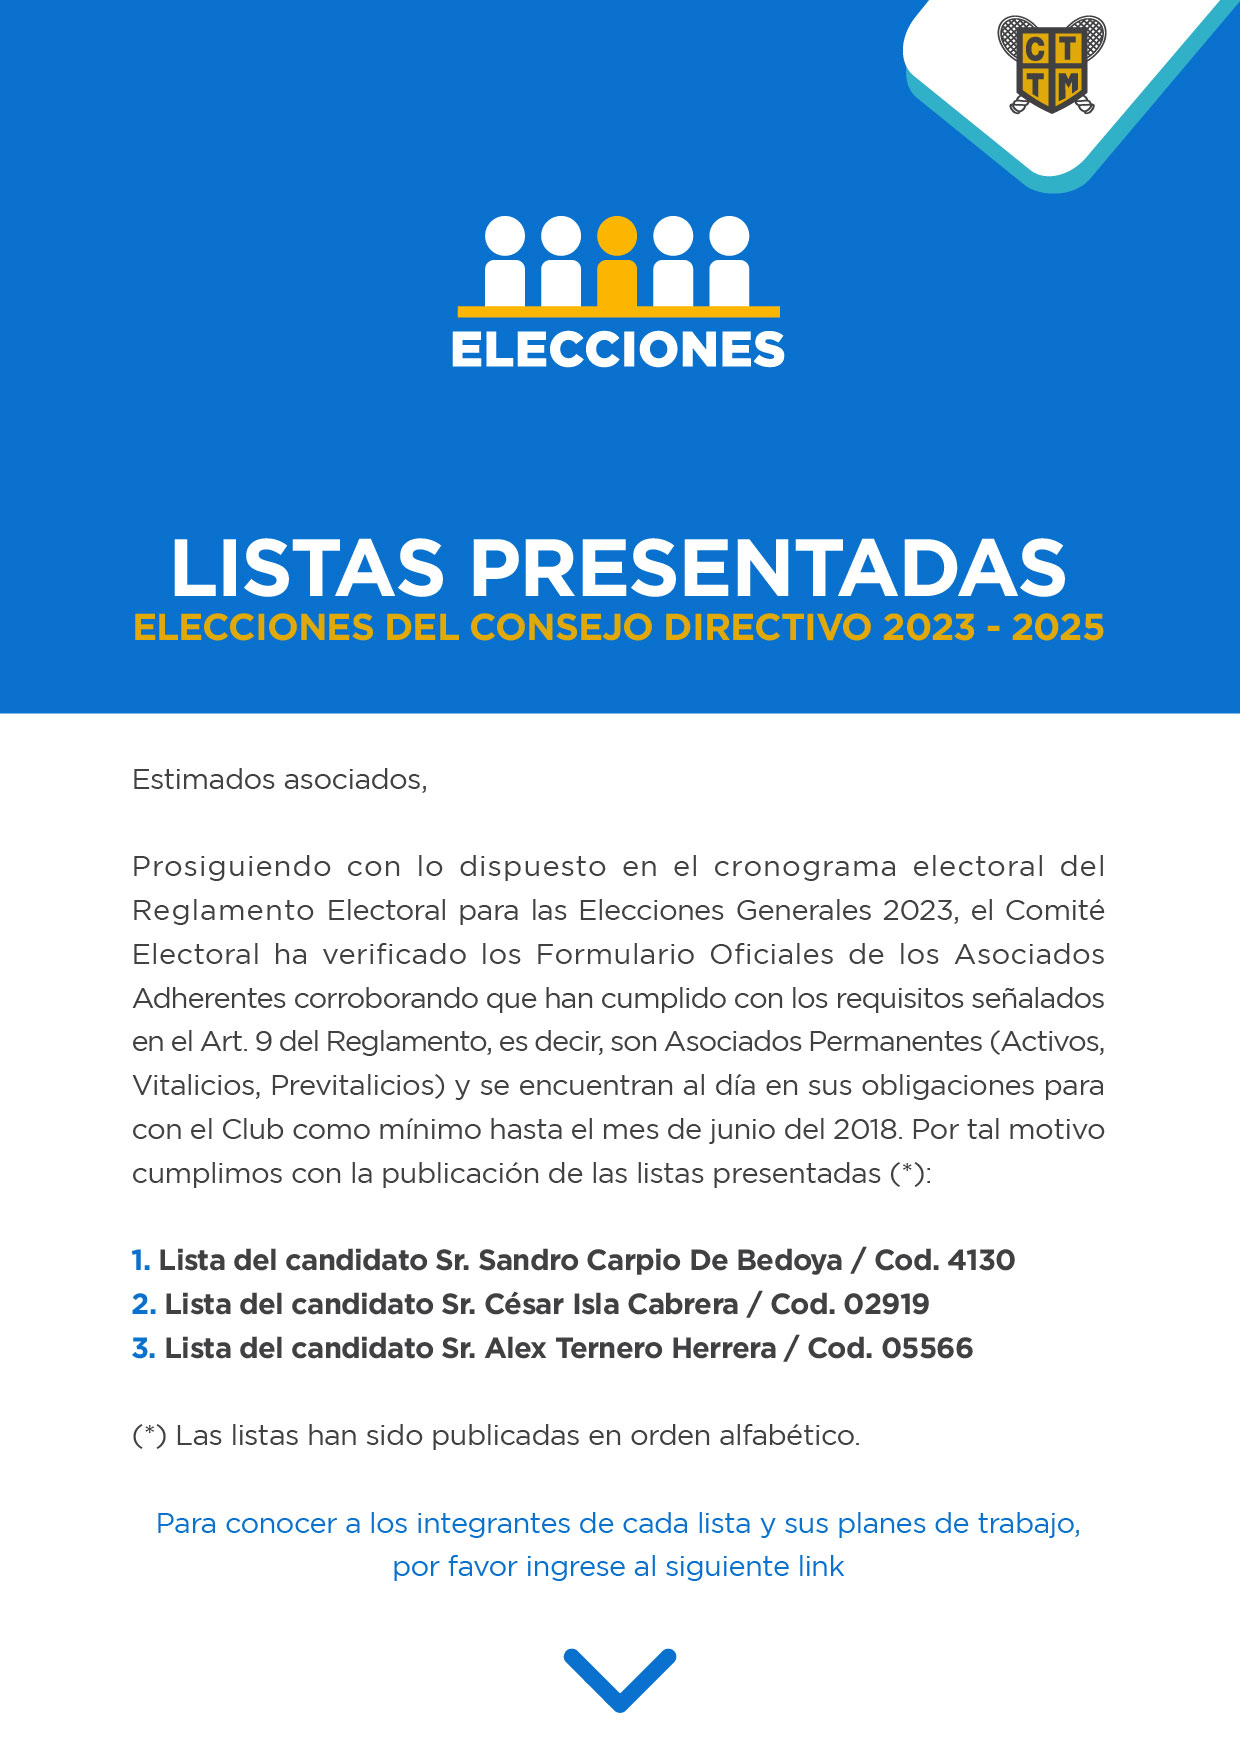 ELECCIONES 2023 - LISTAS PRESENTADAS